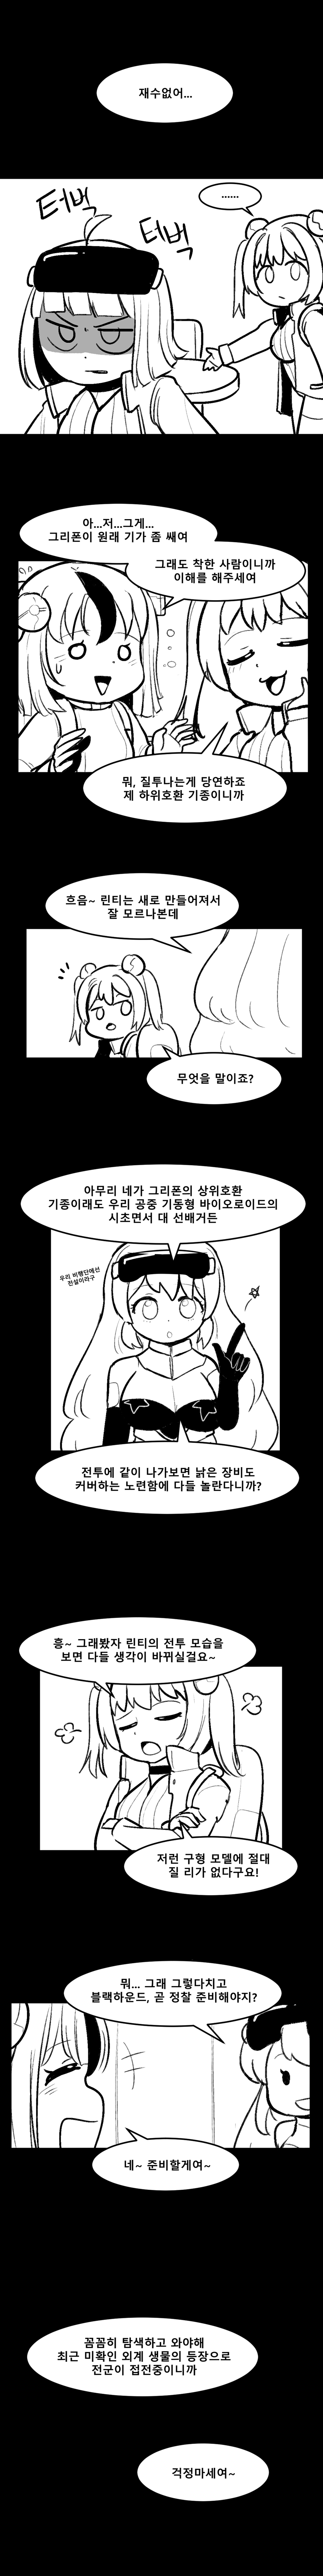 멸망대회 만화2.png